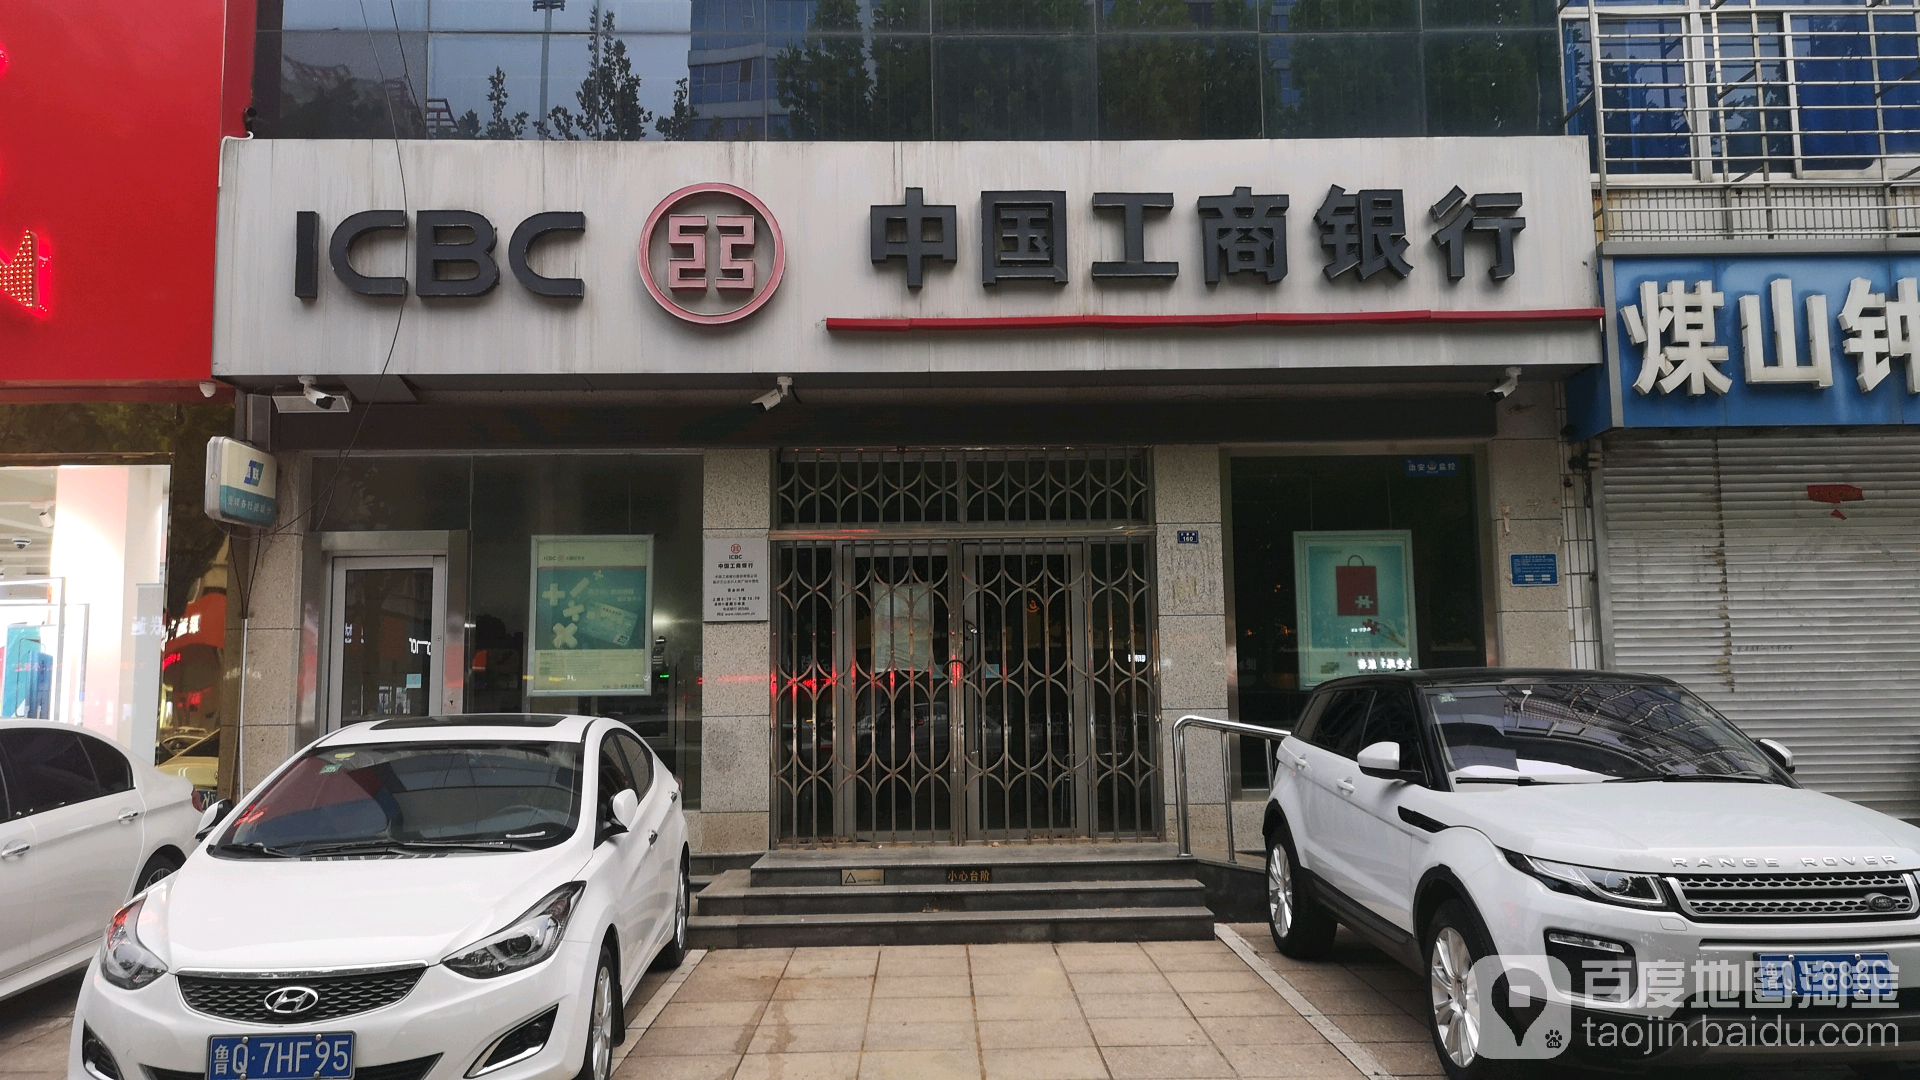 中国工商银行24小时自助银行(人民广场分理处)